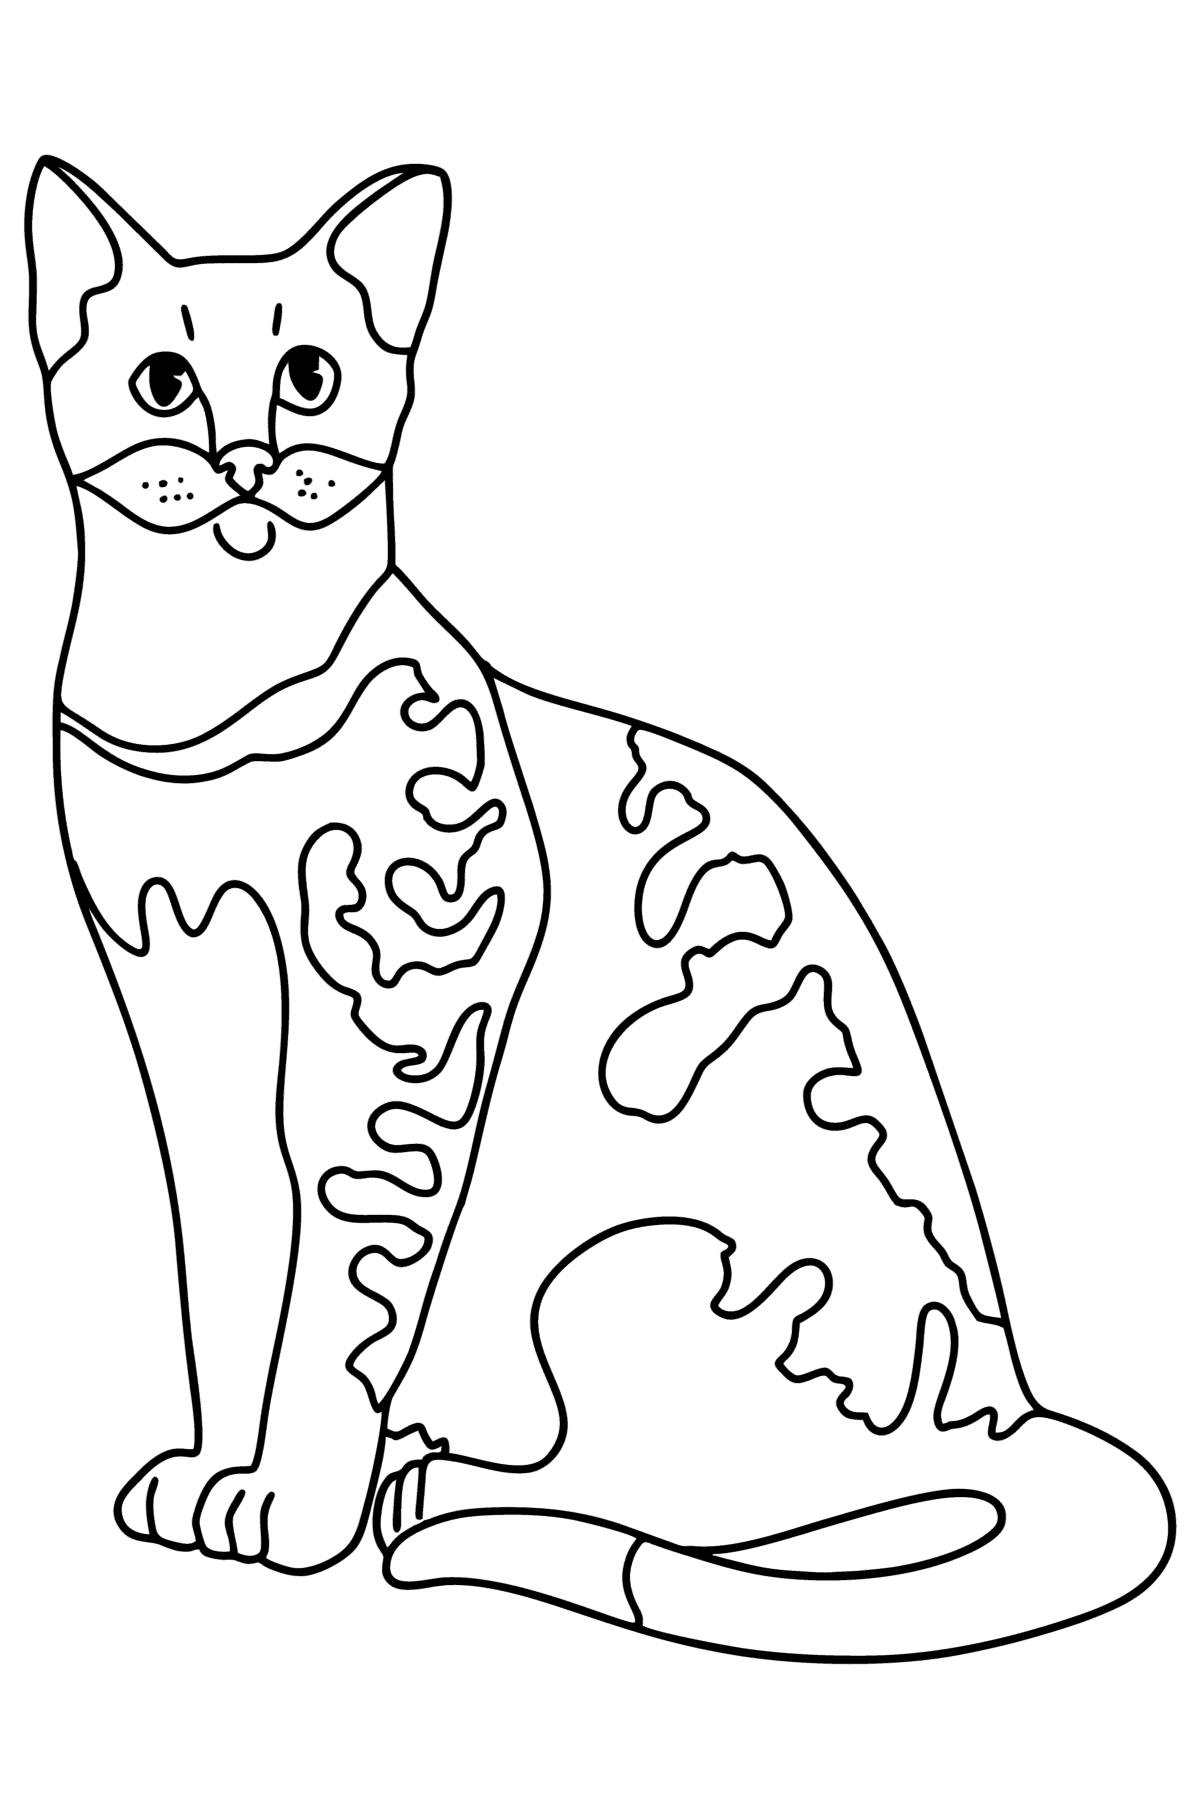 Раскраска Египетская кошка - Картинки для Детей